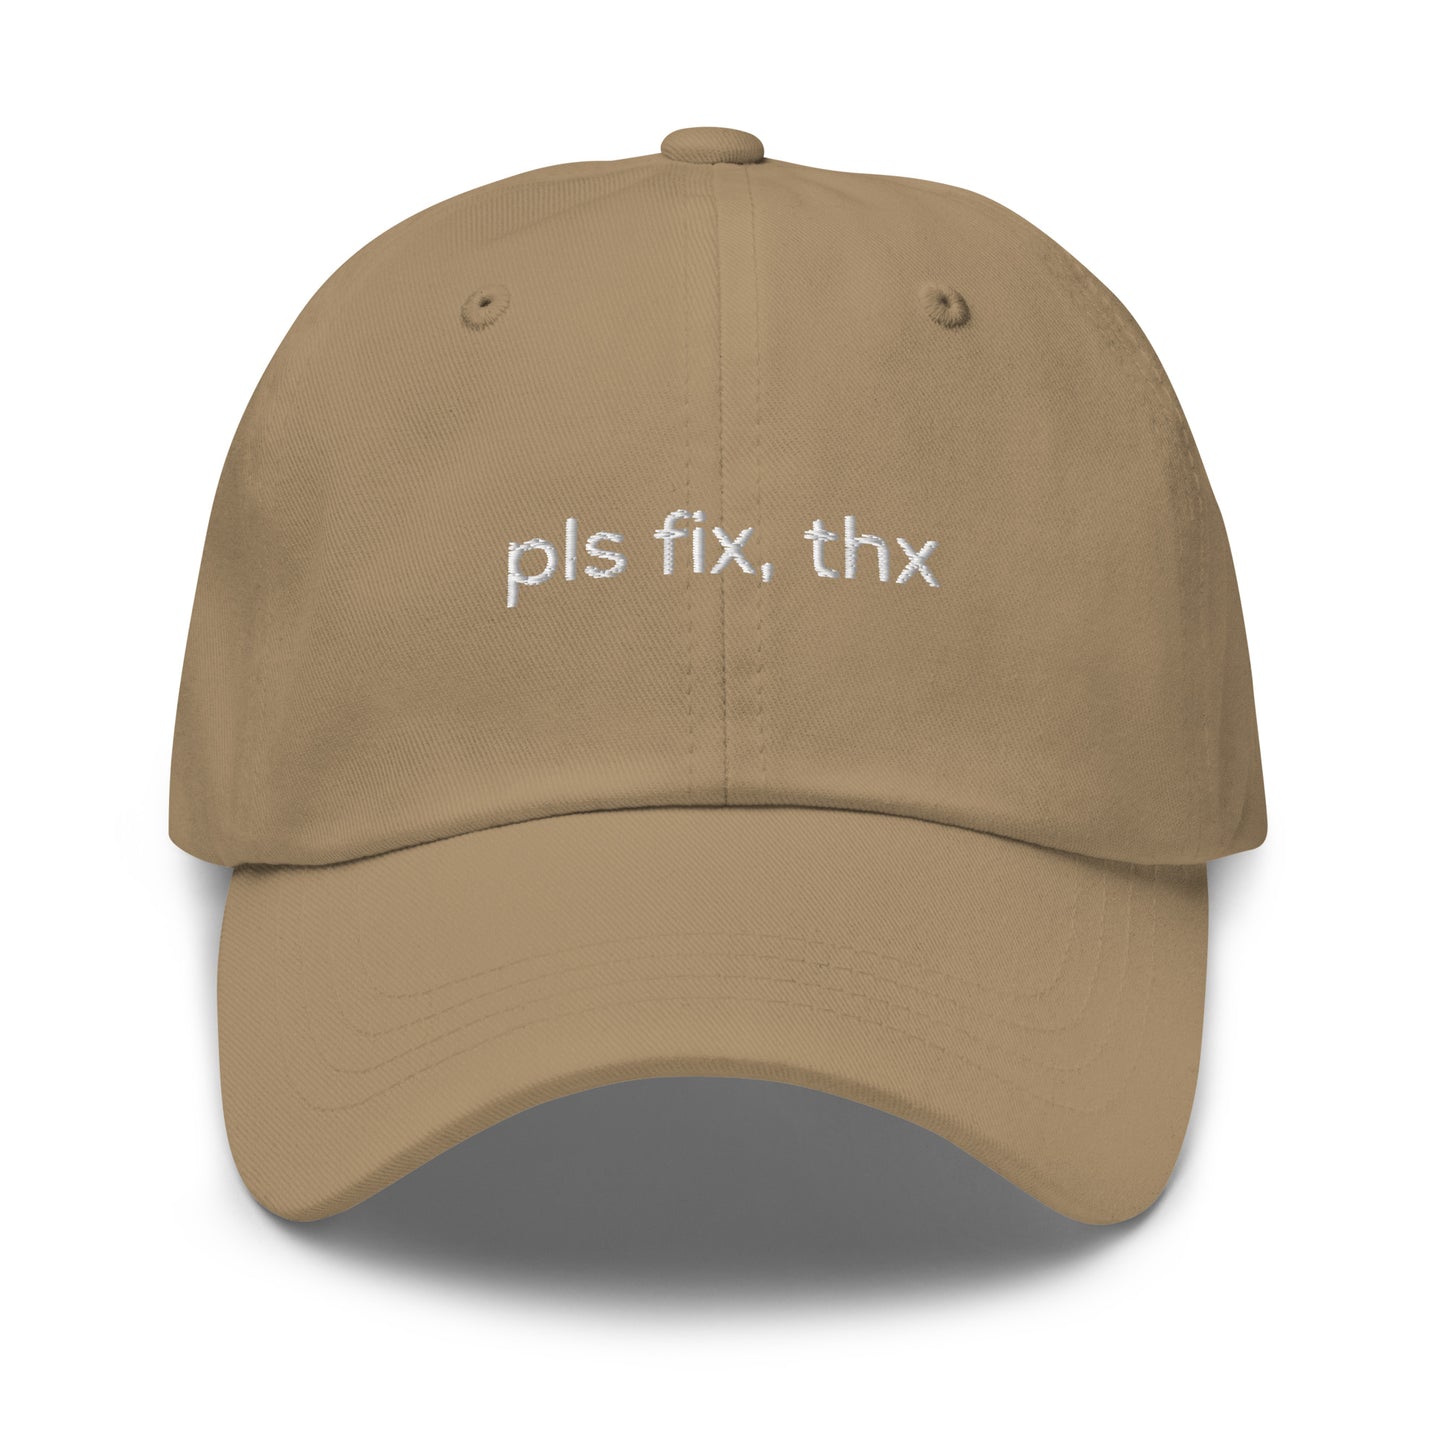 Pls fix, thx Cap